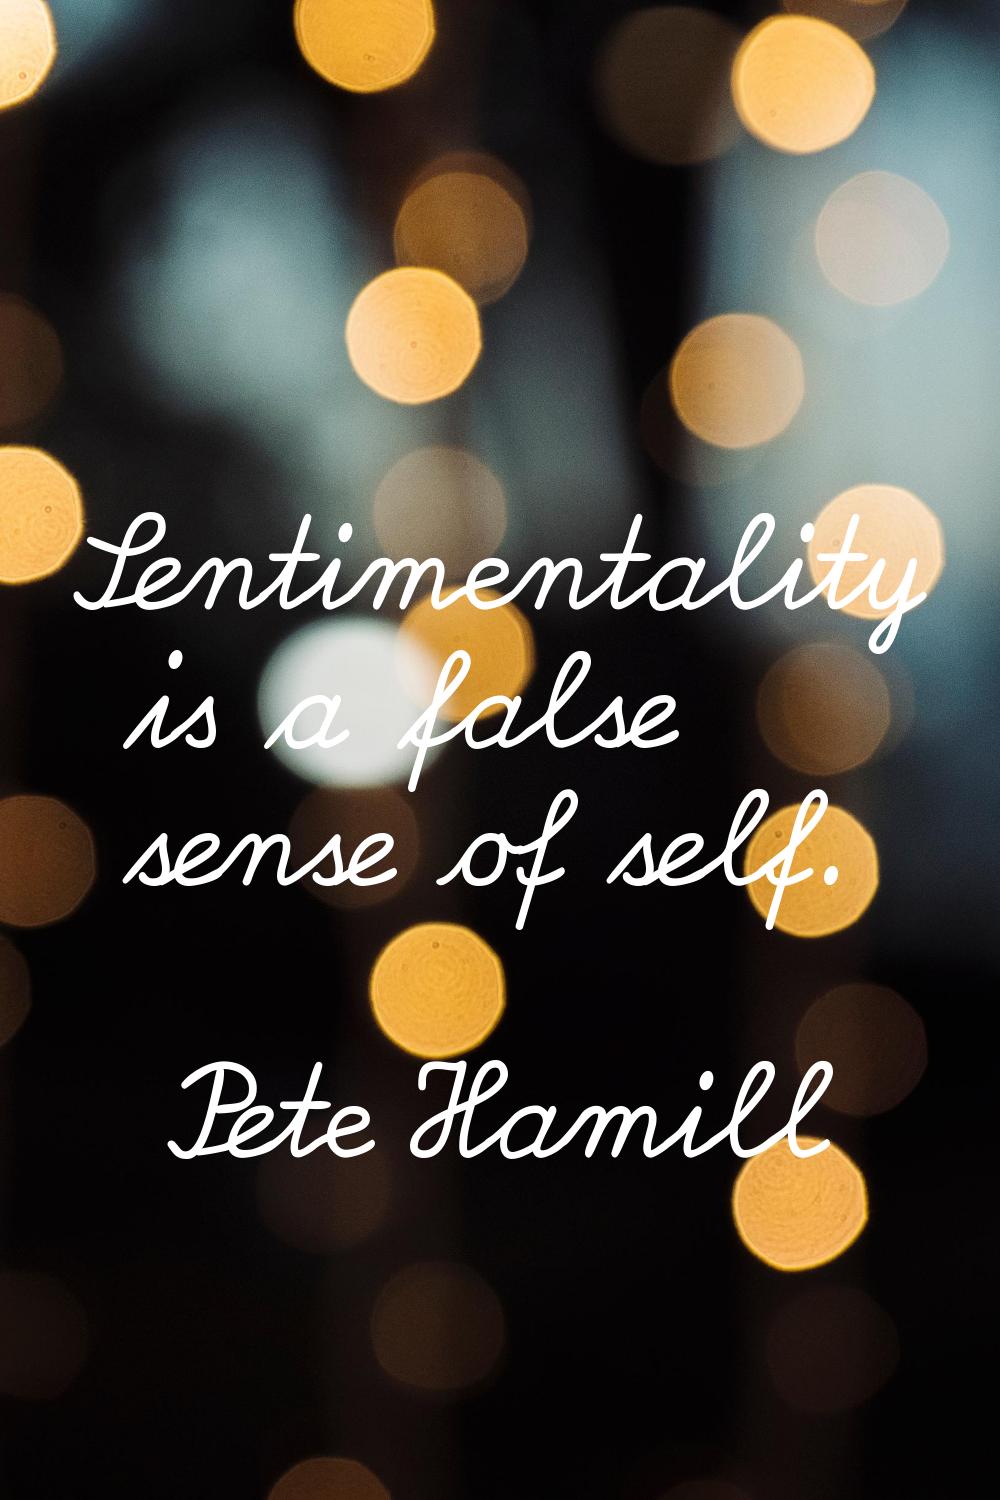 Sentimentality is a false sense of self.